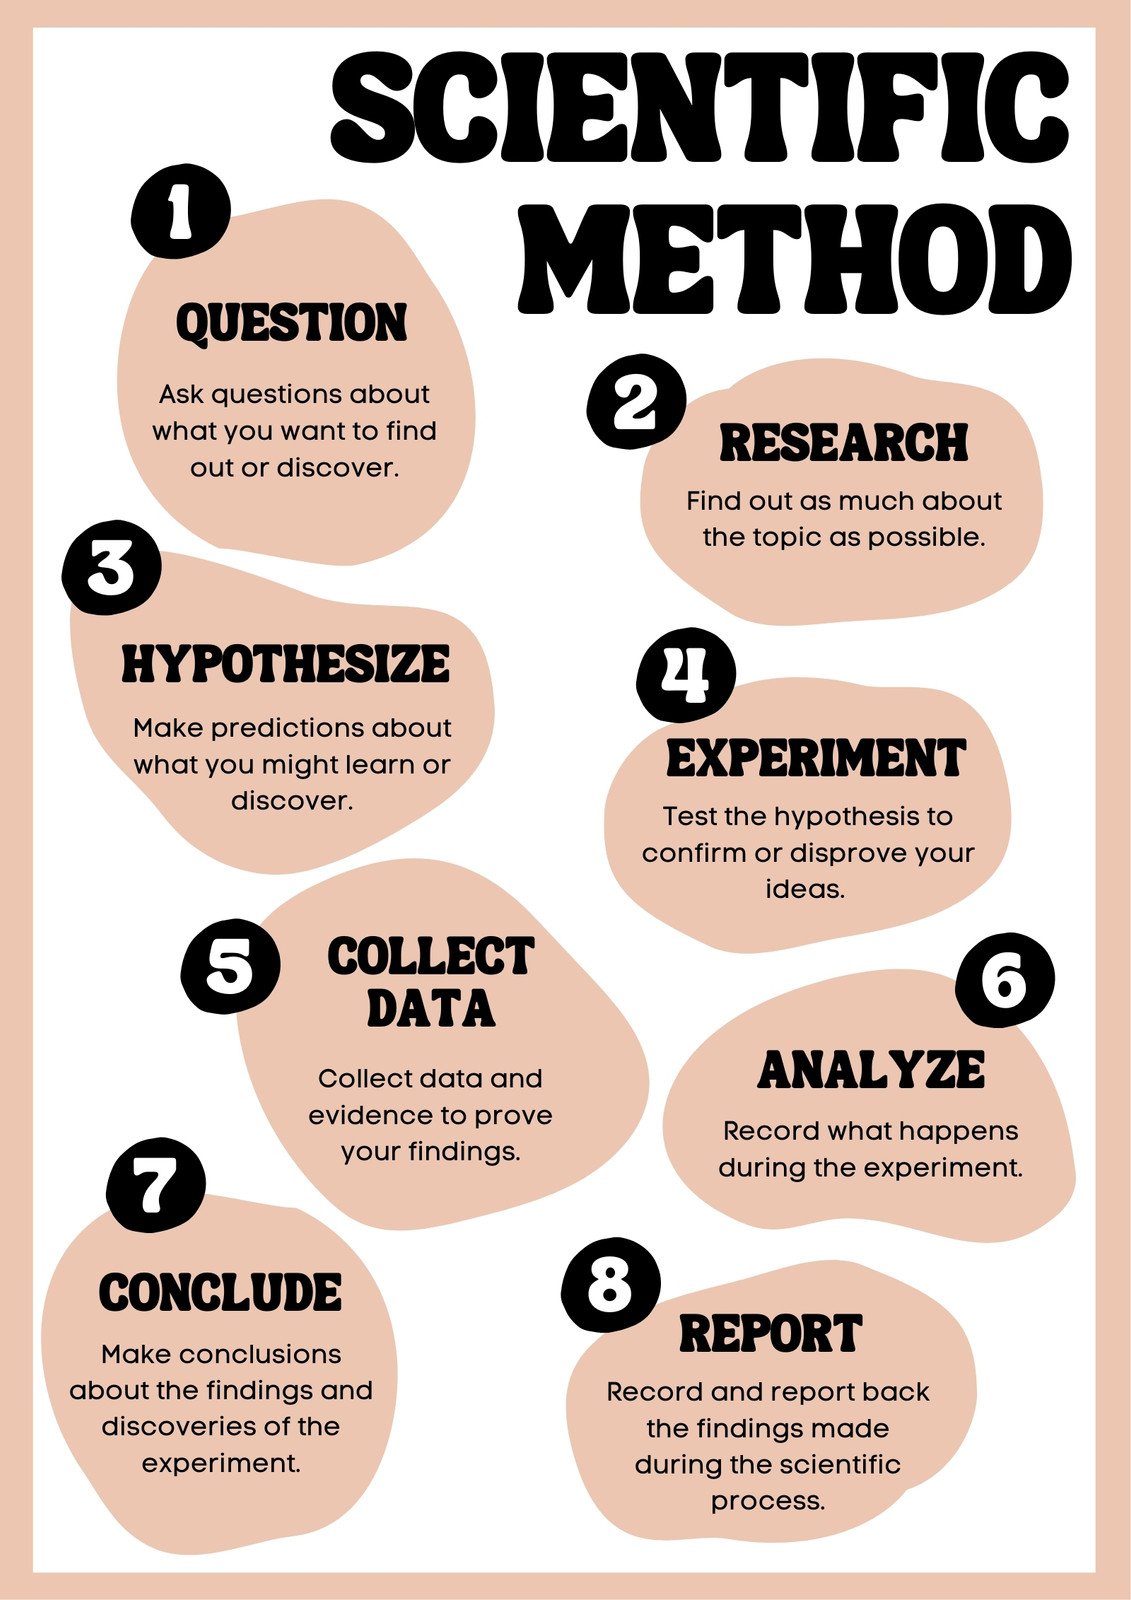 scientific method poster ideas